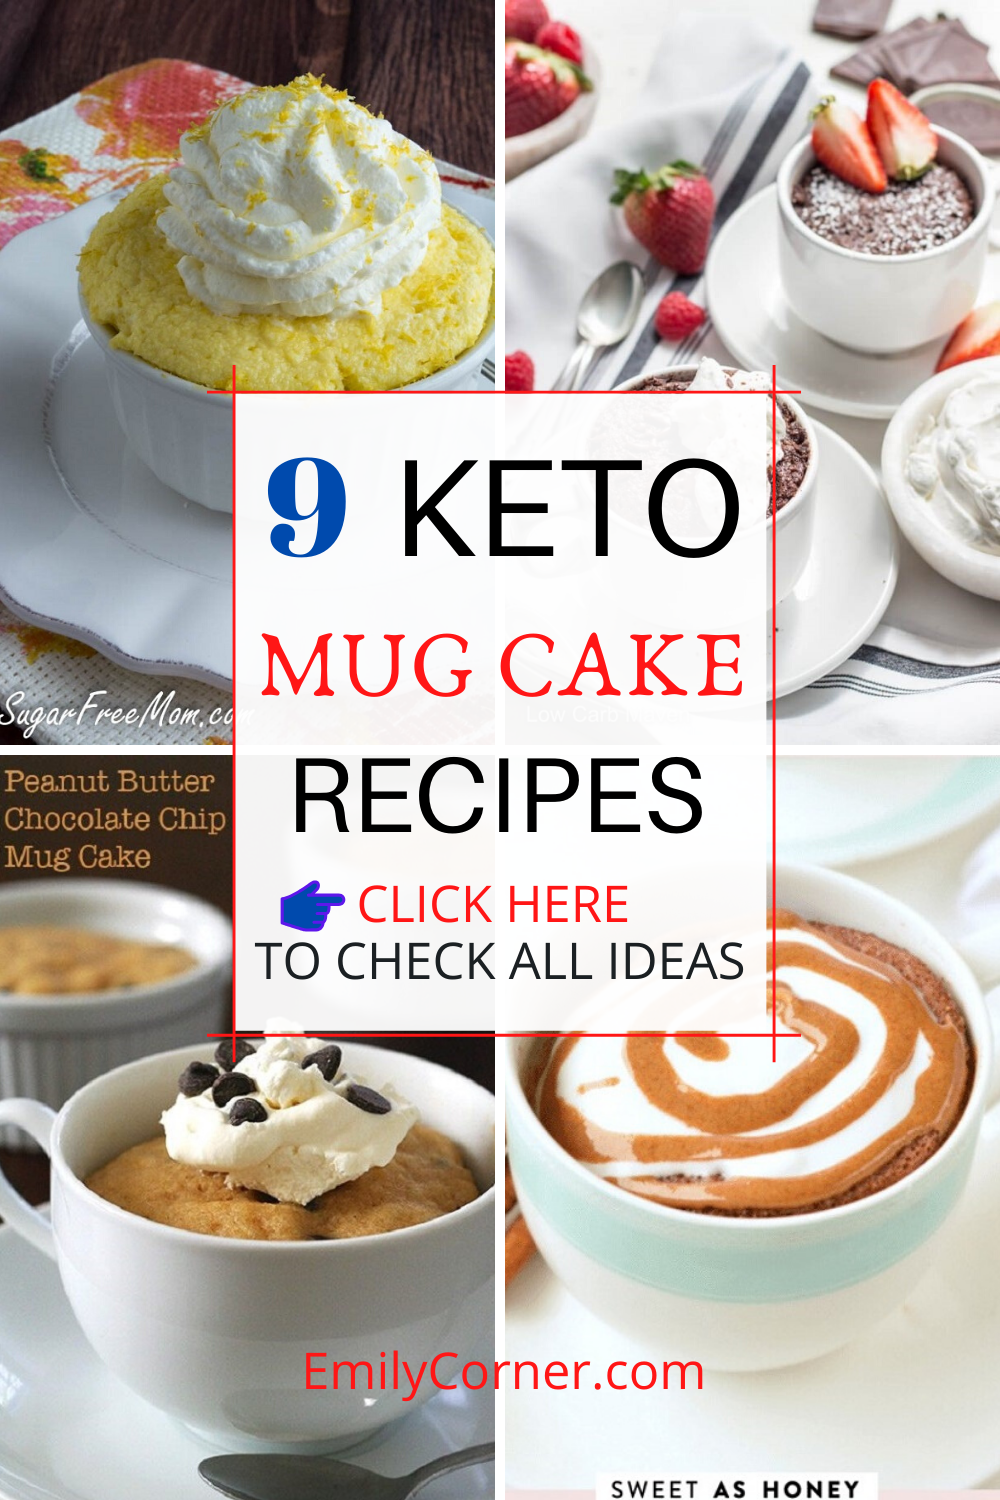 Keto mug cake recipes